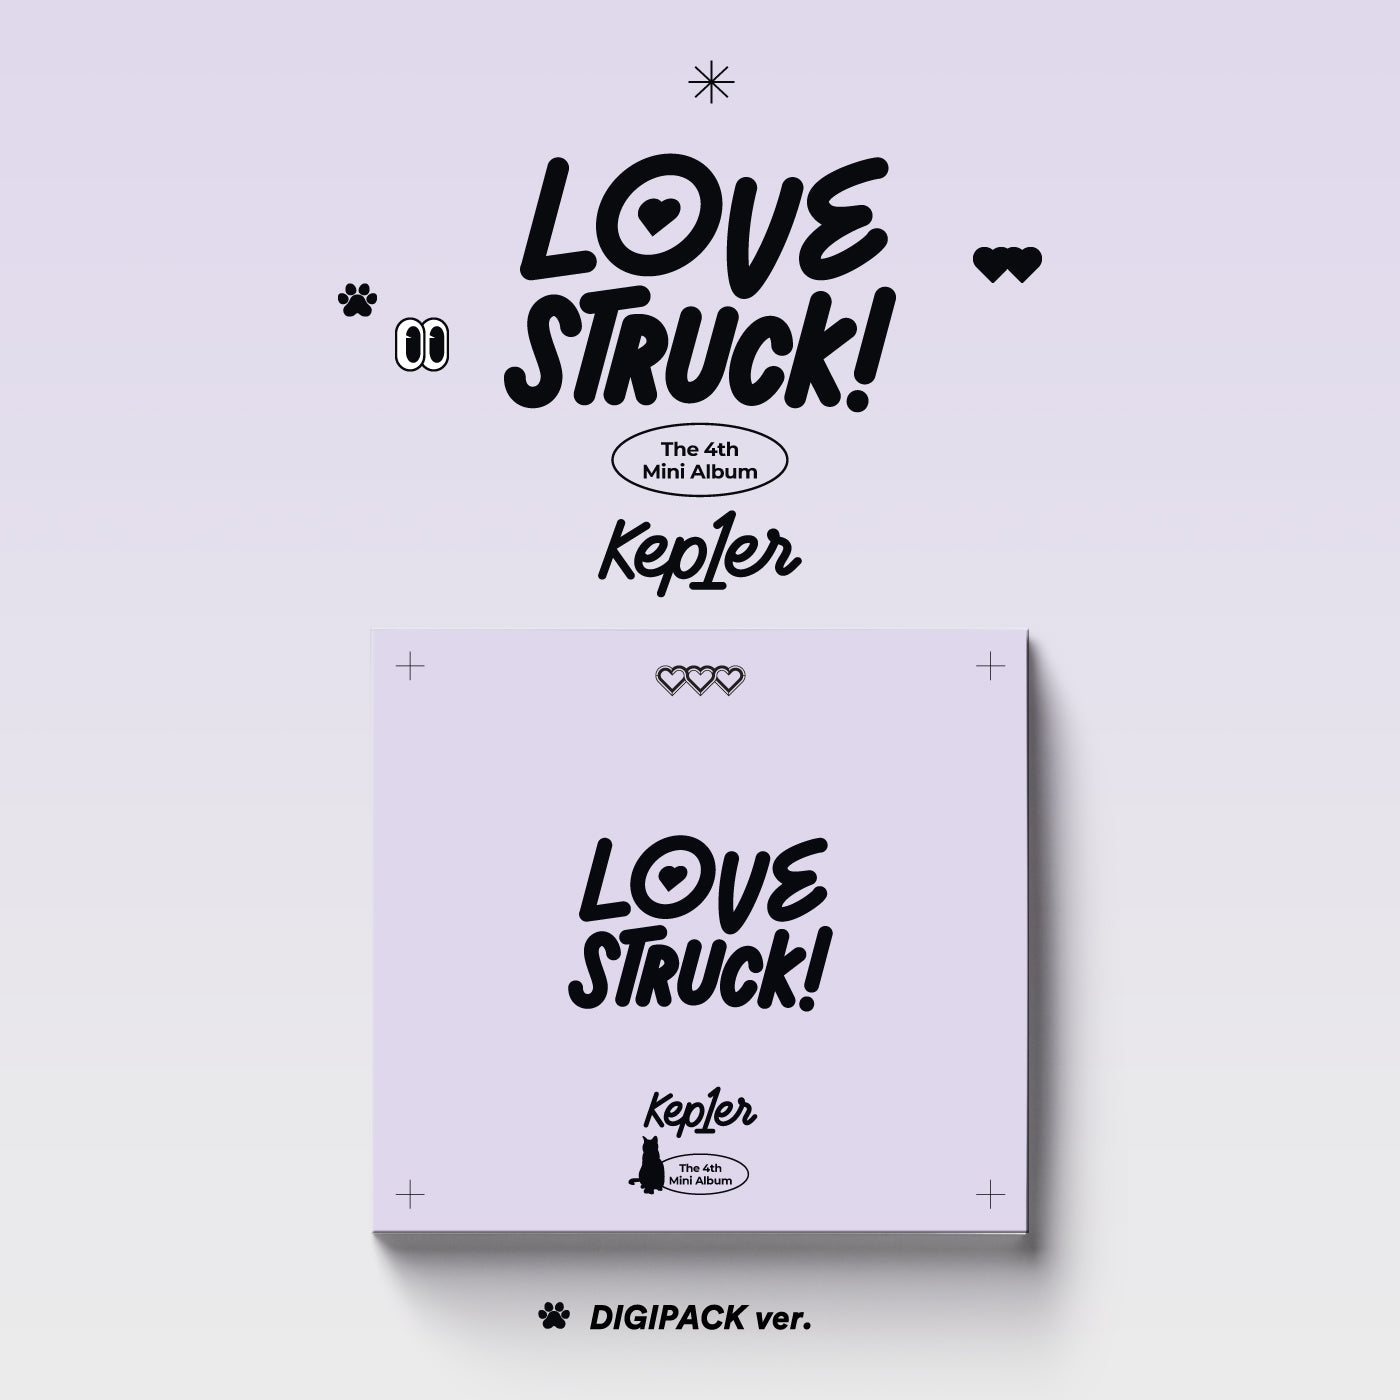 KEP1ER 4TH MINI ALBUM 'LOVESTRUCK!' (DIGIPACK) COVER